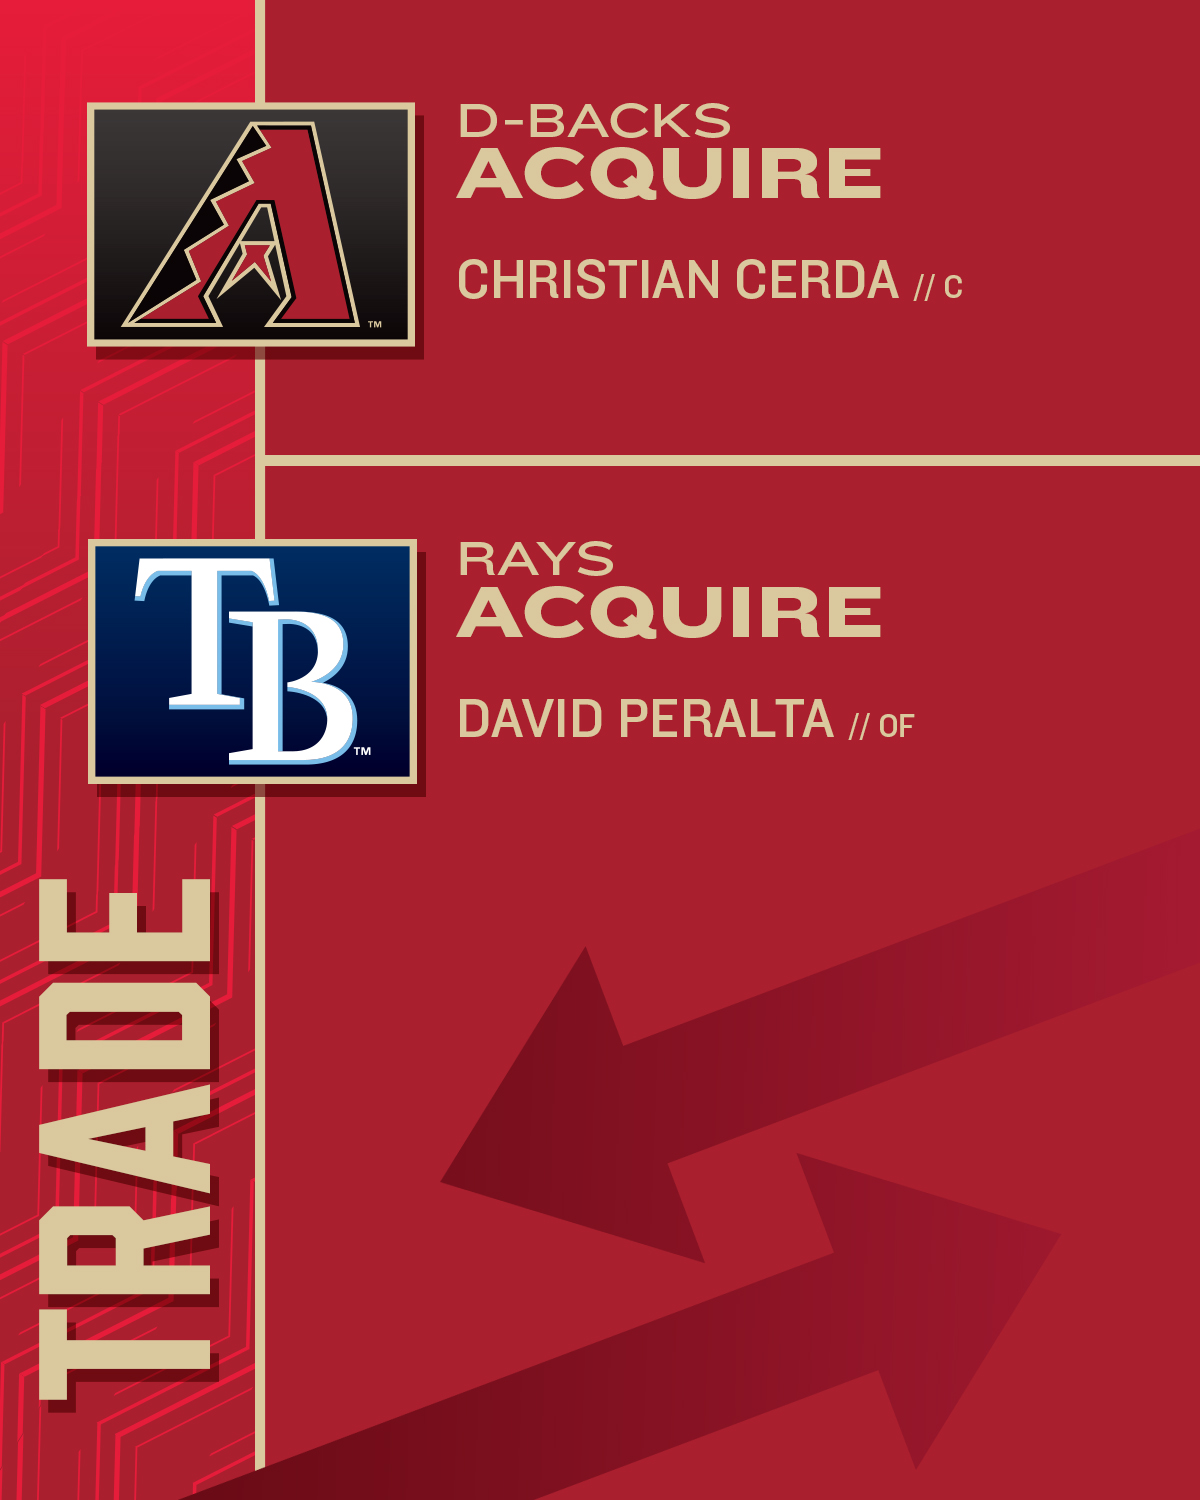 Rays acquire David Peralta in trade with Diamondbacks